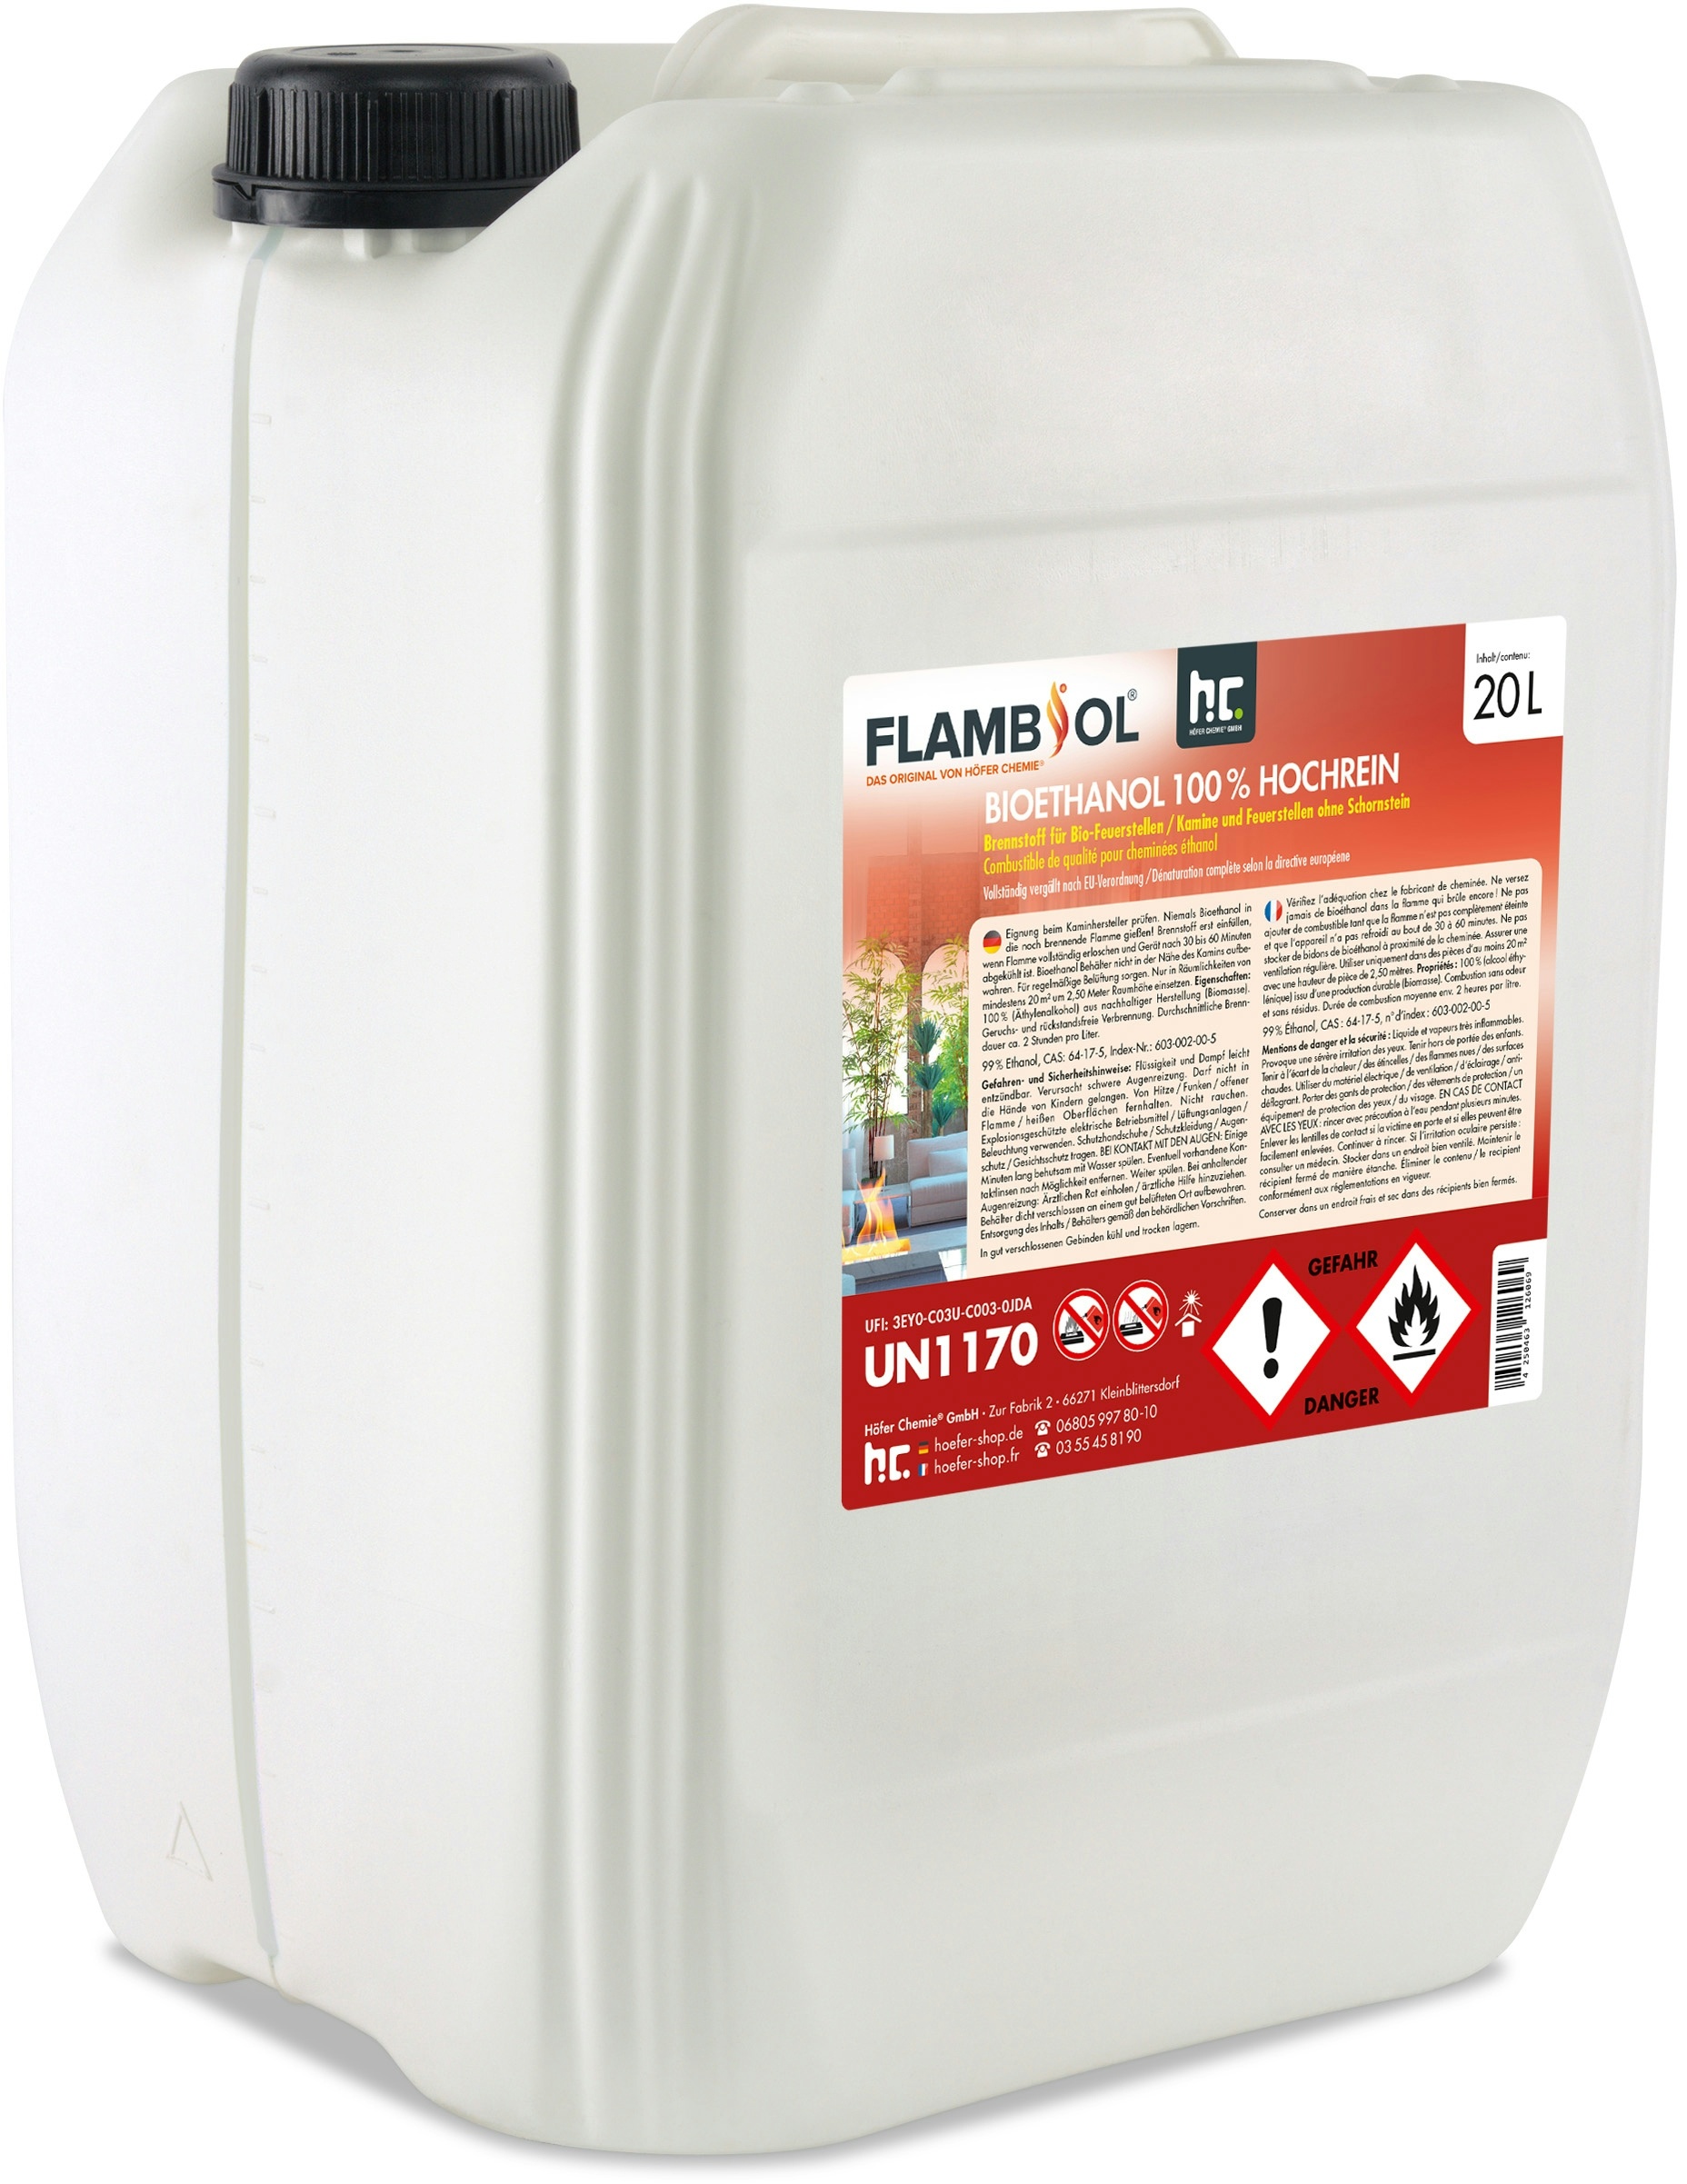 3 x 20 Liter FLAMBIOL® Bioethanol 100% Hochrein